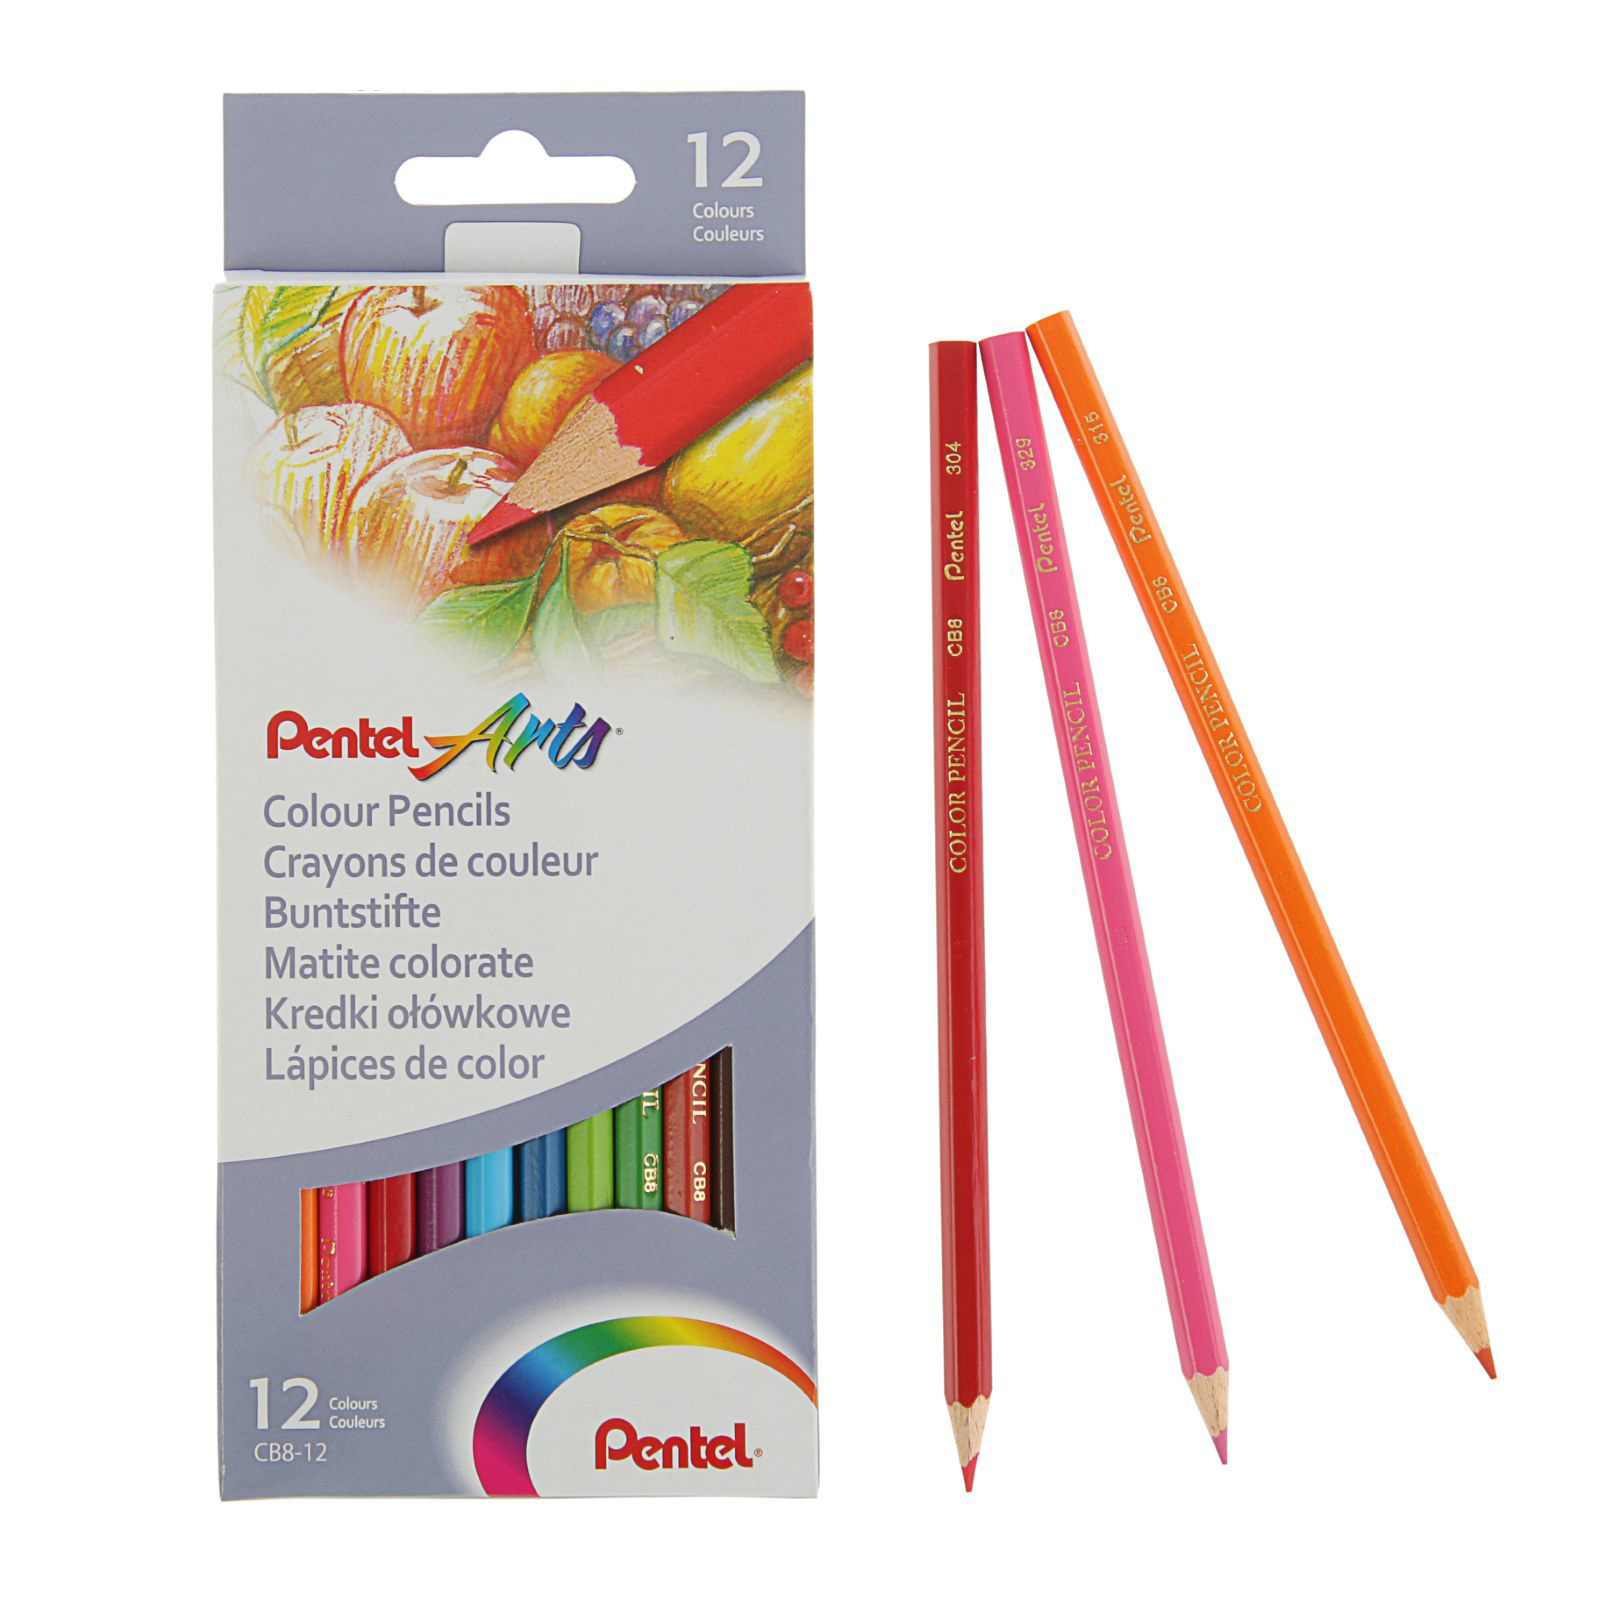 Карандаши цветные задания. Цветные карандаши Colour Pencils, 12 шт. Cb8-12. Pentel цветные карандаши 12 цветов Arts. Цветные карандаши Colour Pencils, 12 шт. Карандаши цветные без дерева.